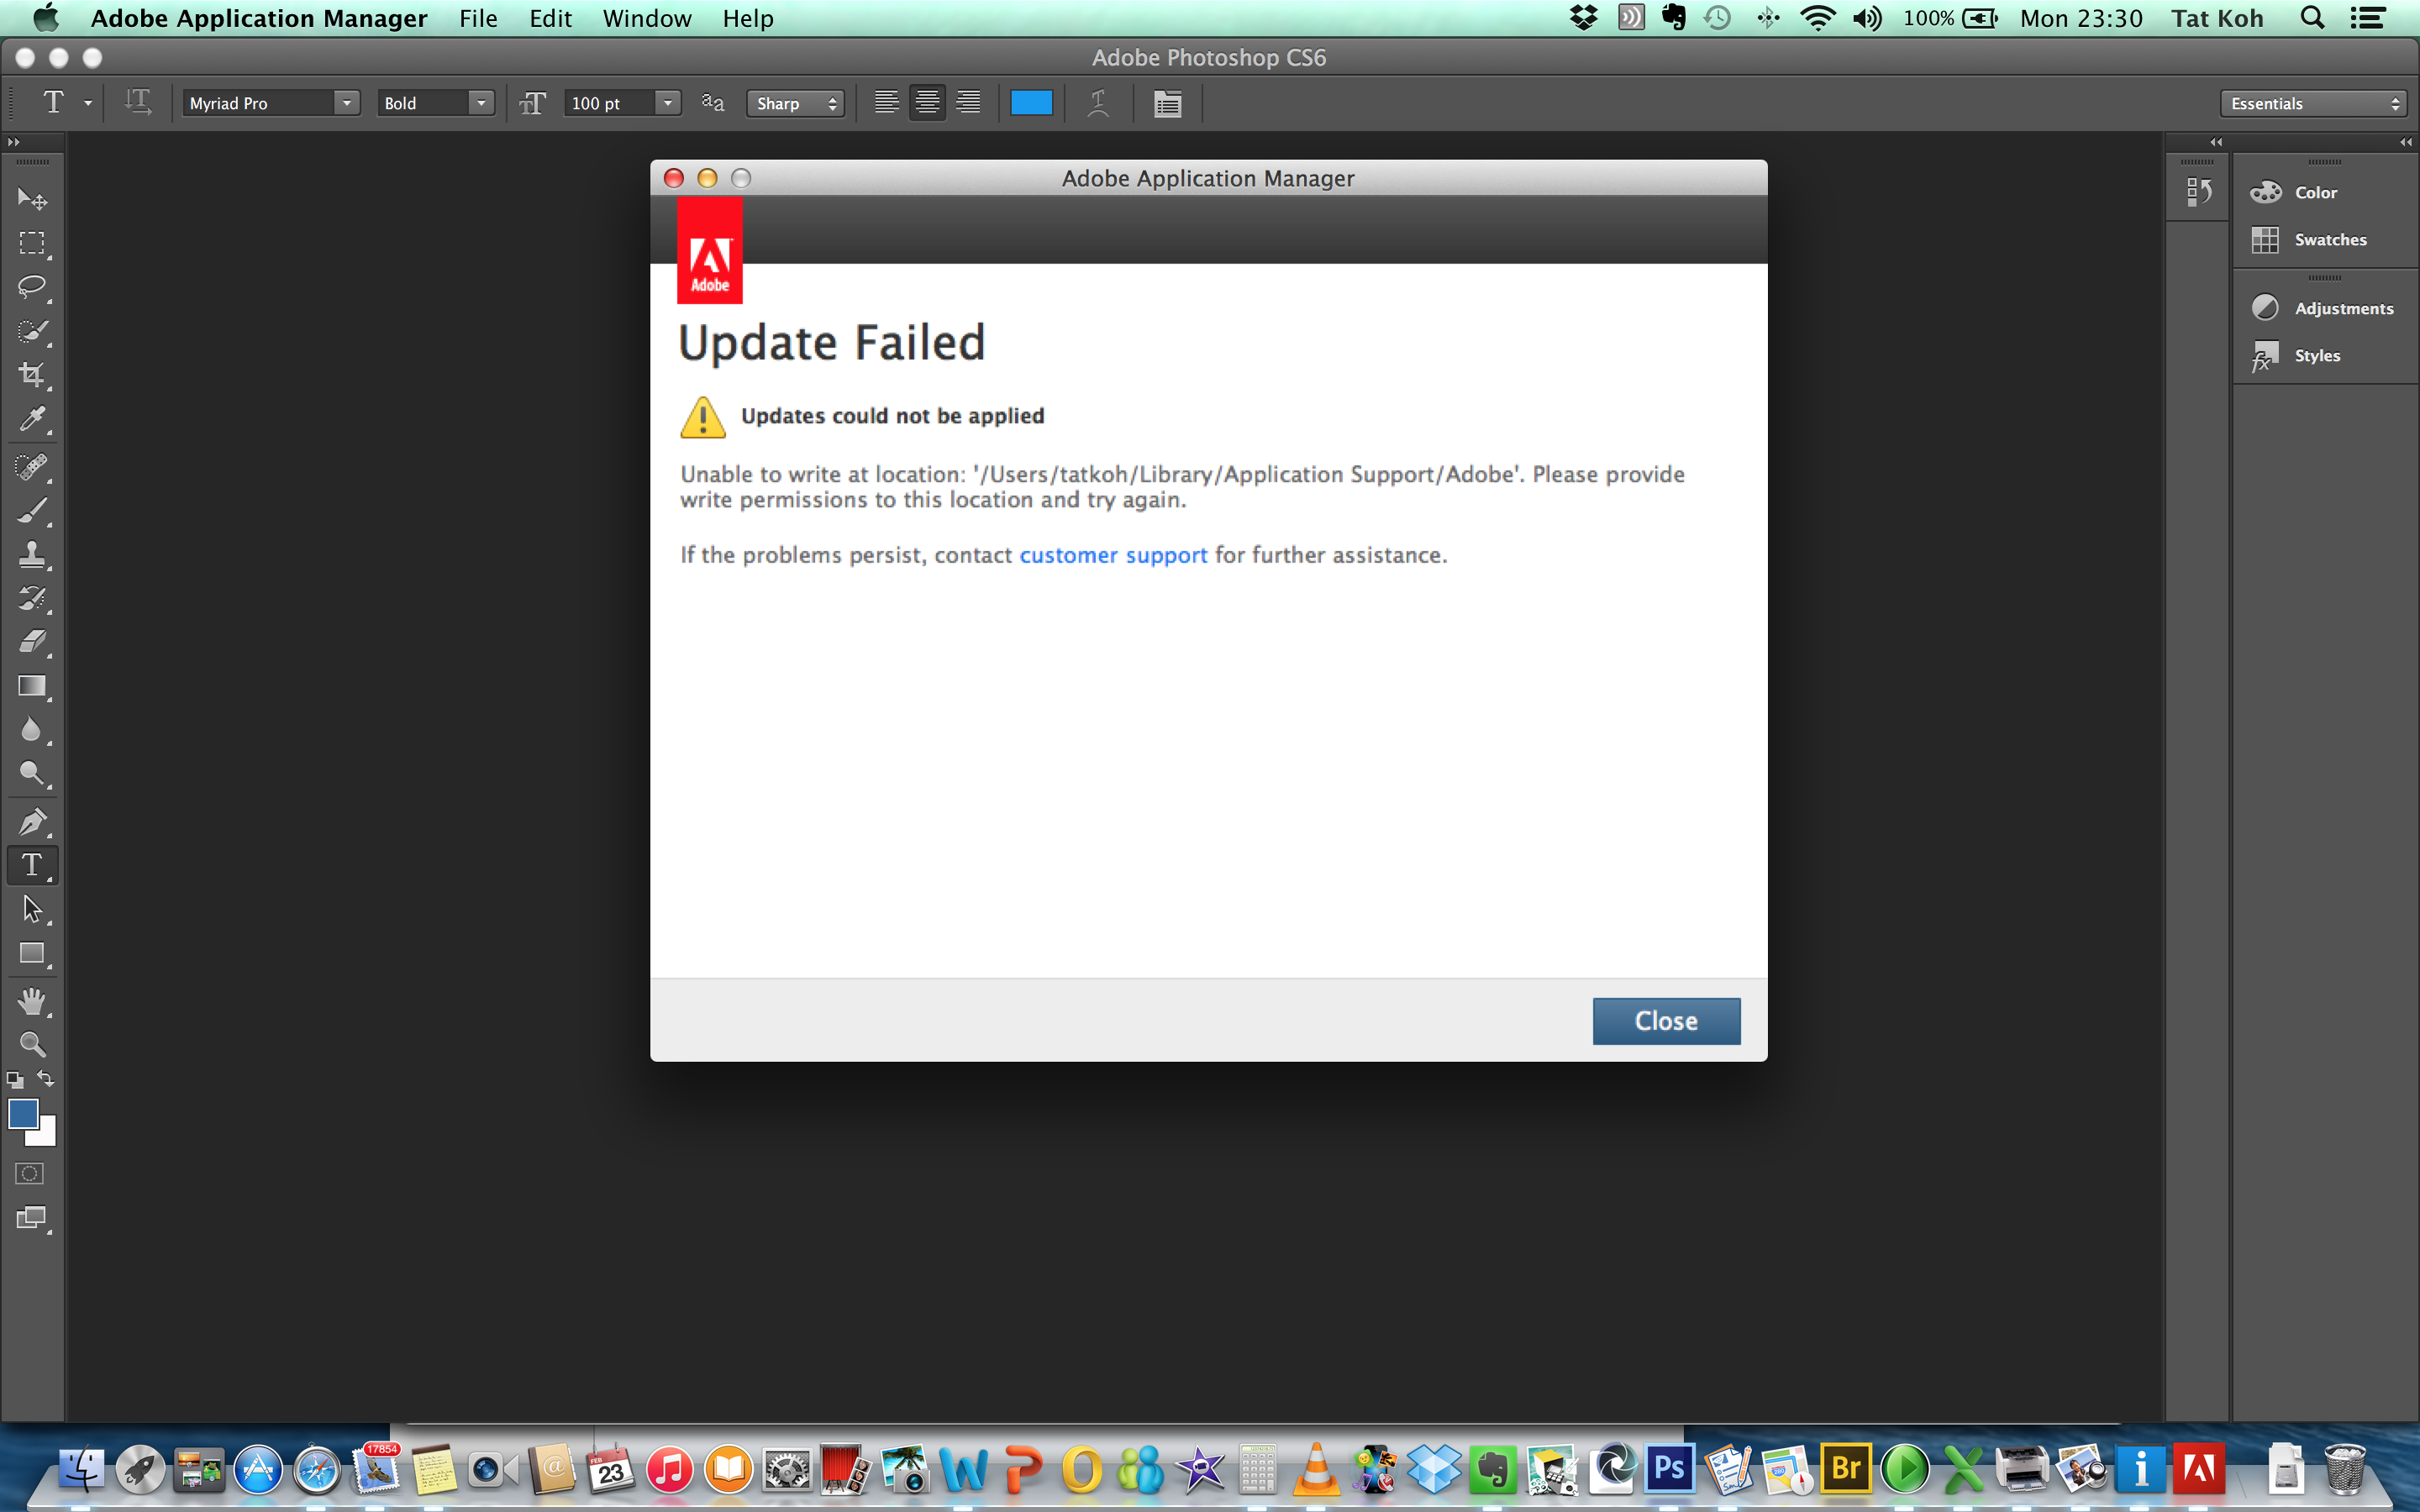 mac 10.9 download